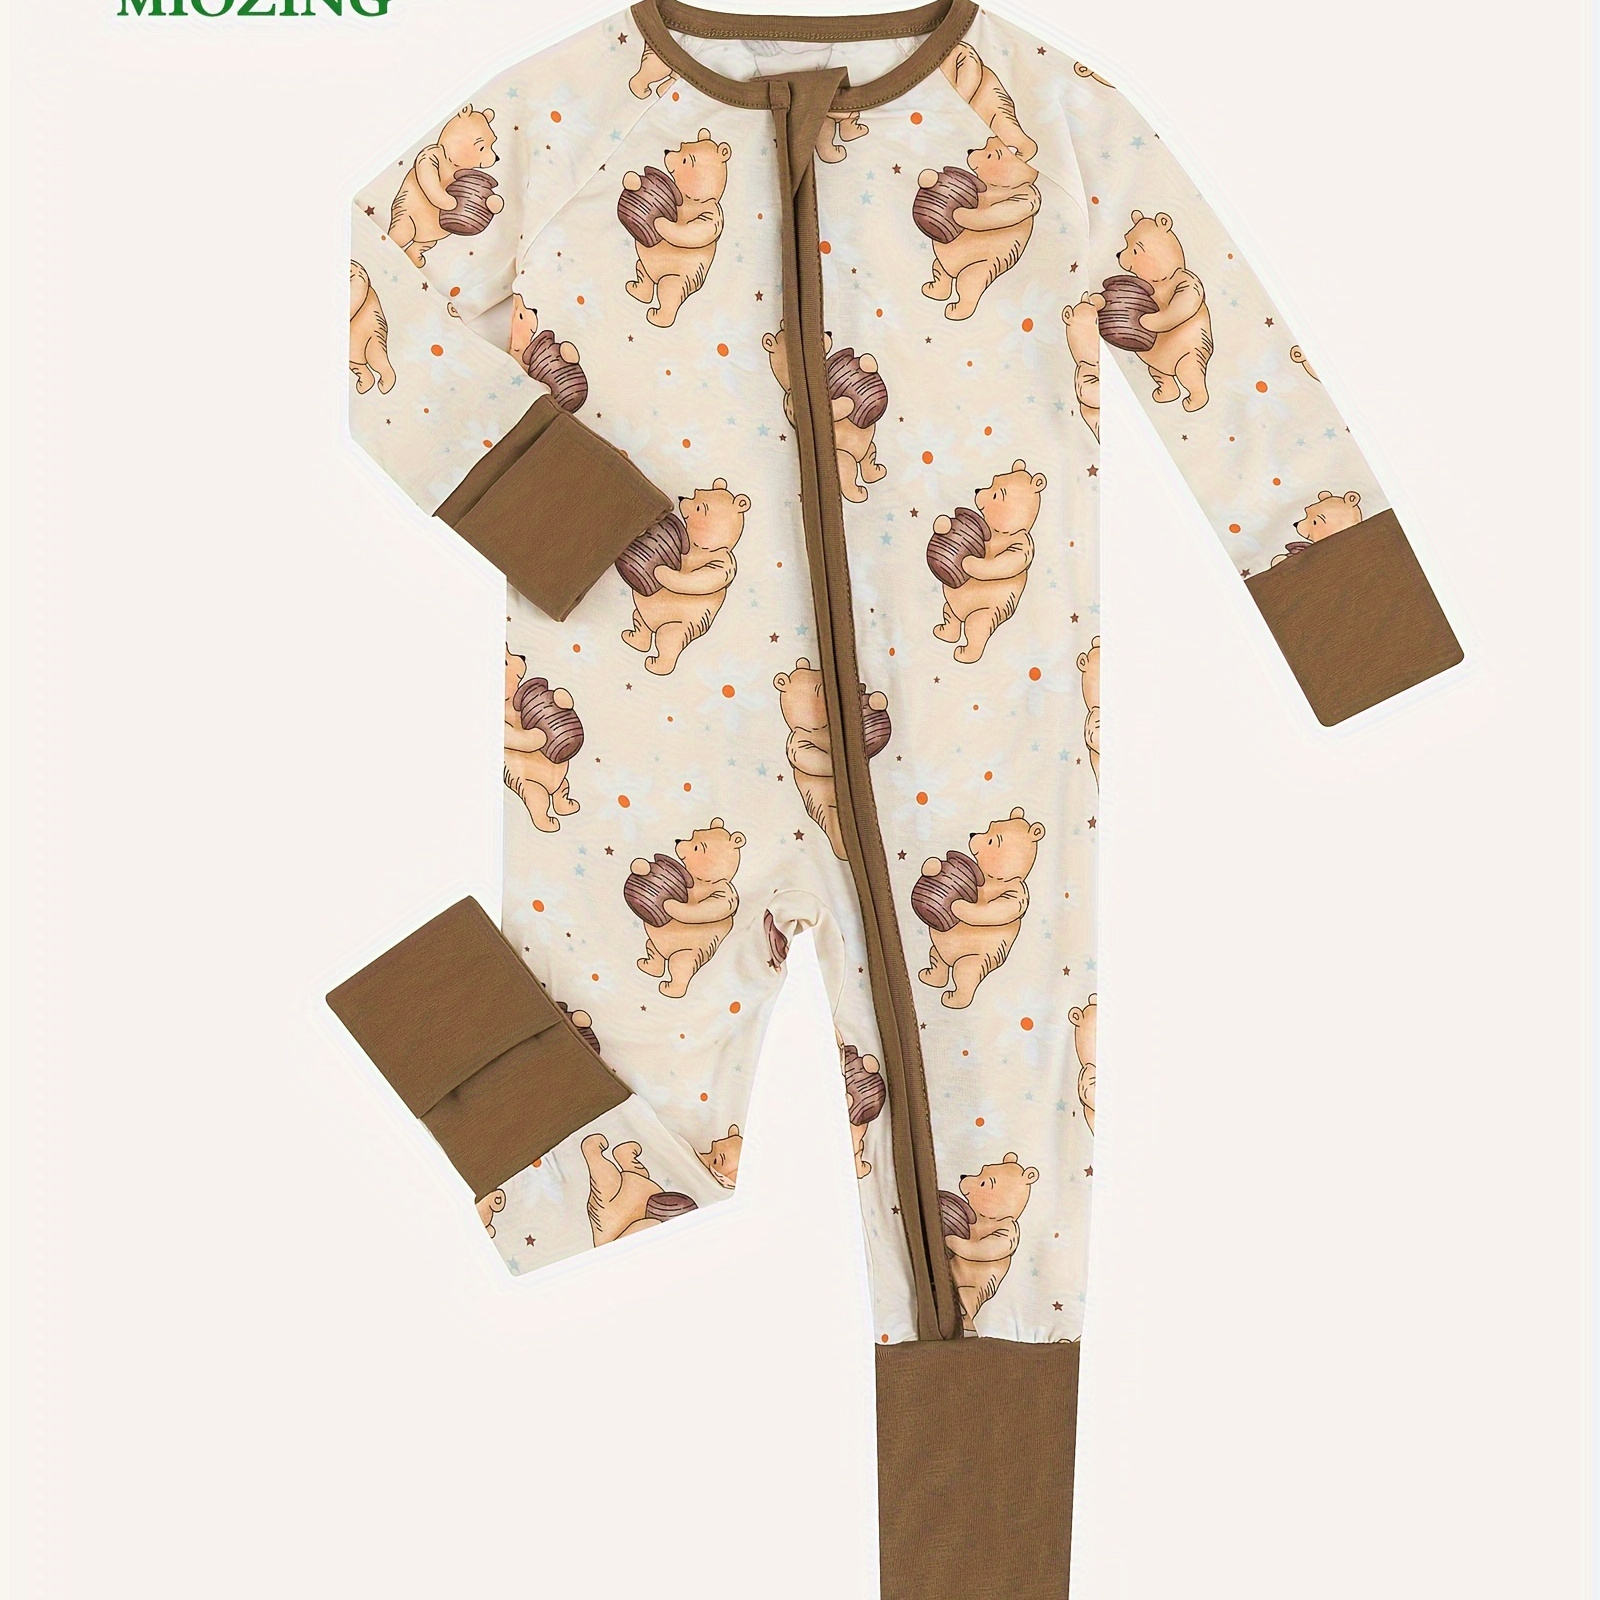 

Miozing Bamboo Fiber Bodysuit For Baby, Cartoon Bear & Honey Pattern Long Sleeve Onesie, Infant & Toddler Girl's Romper